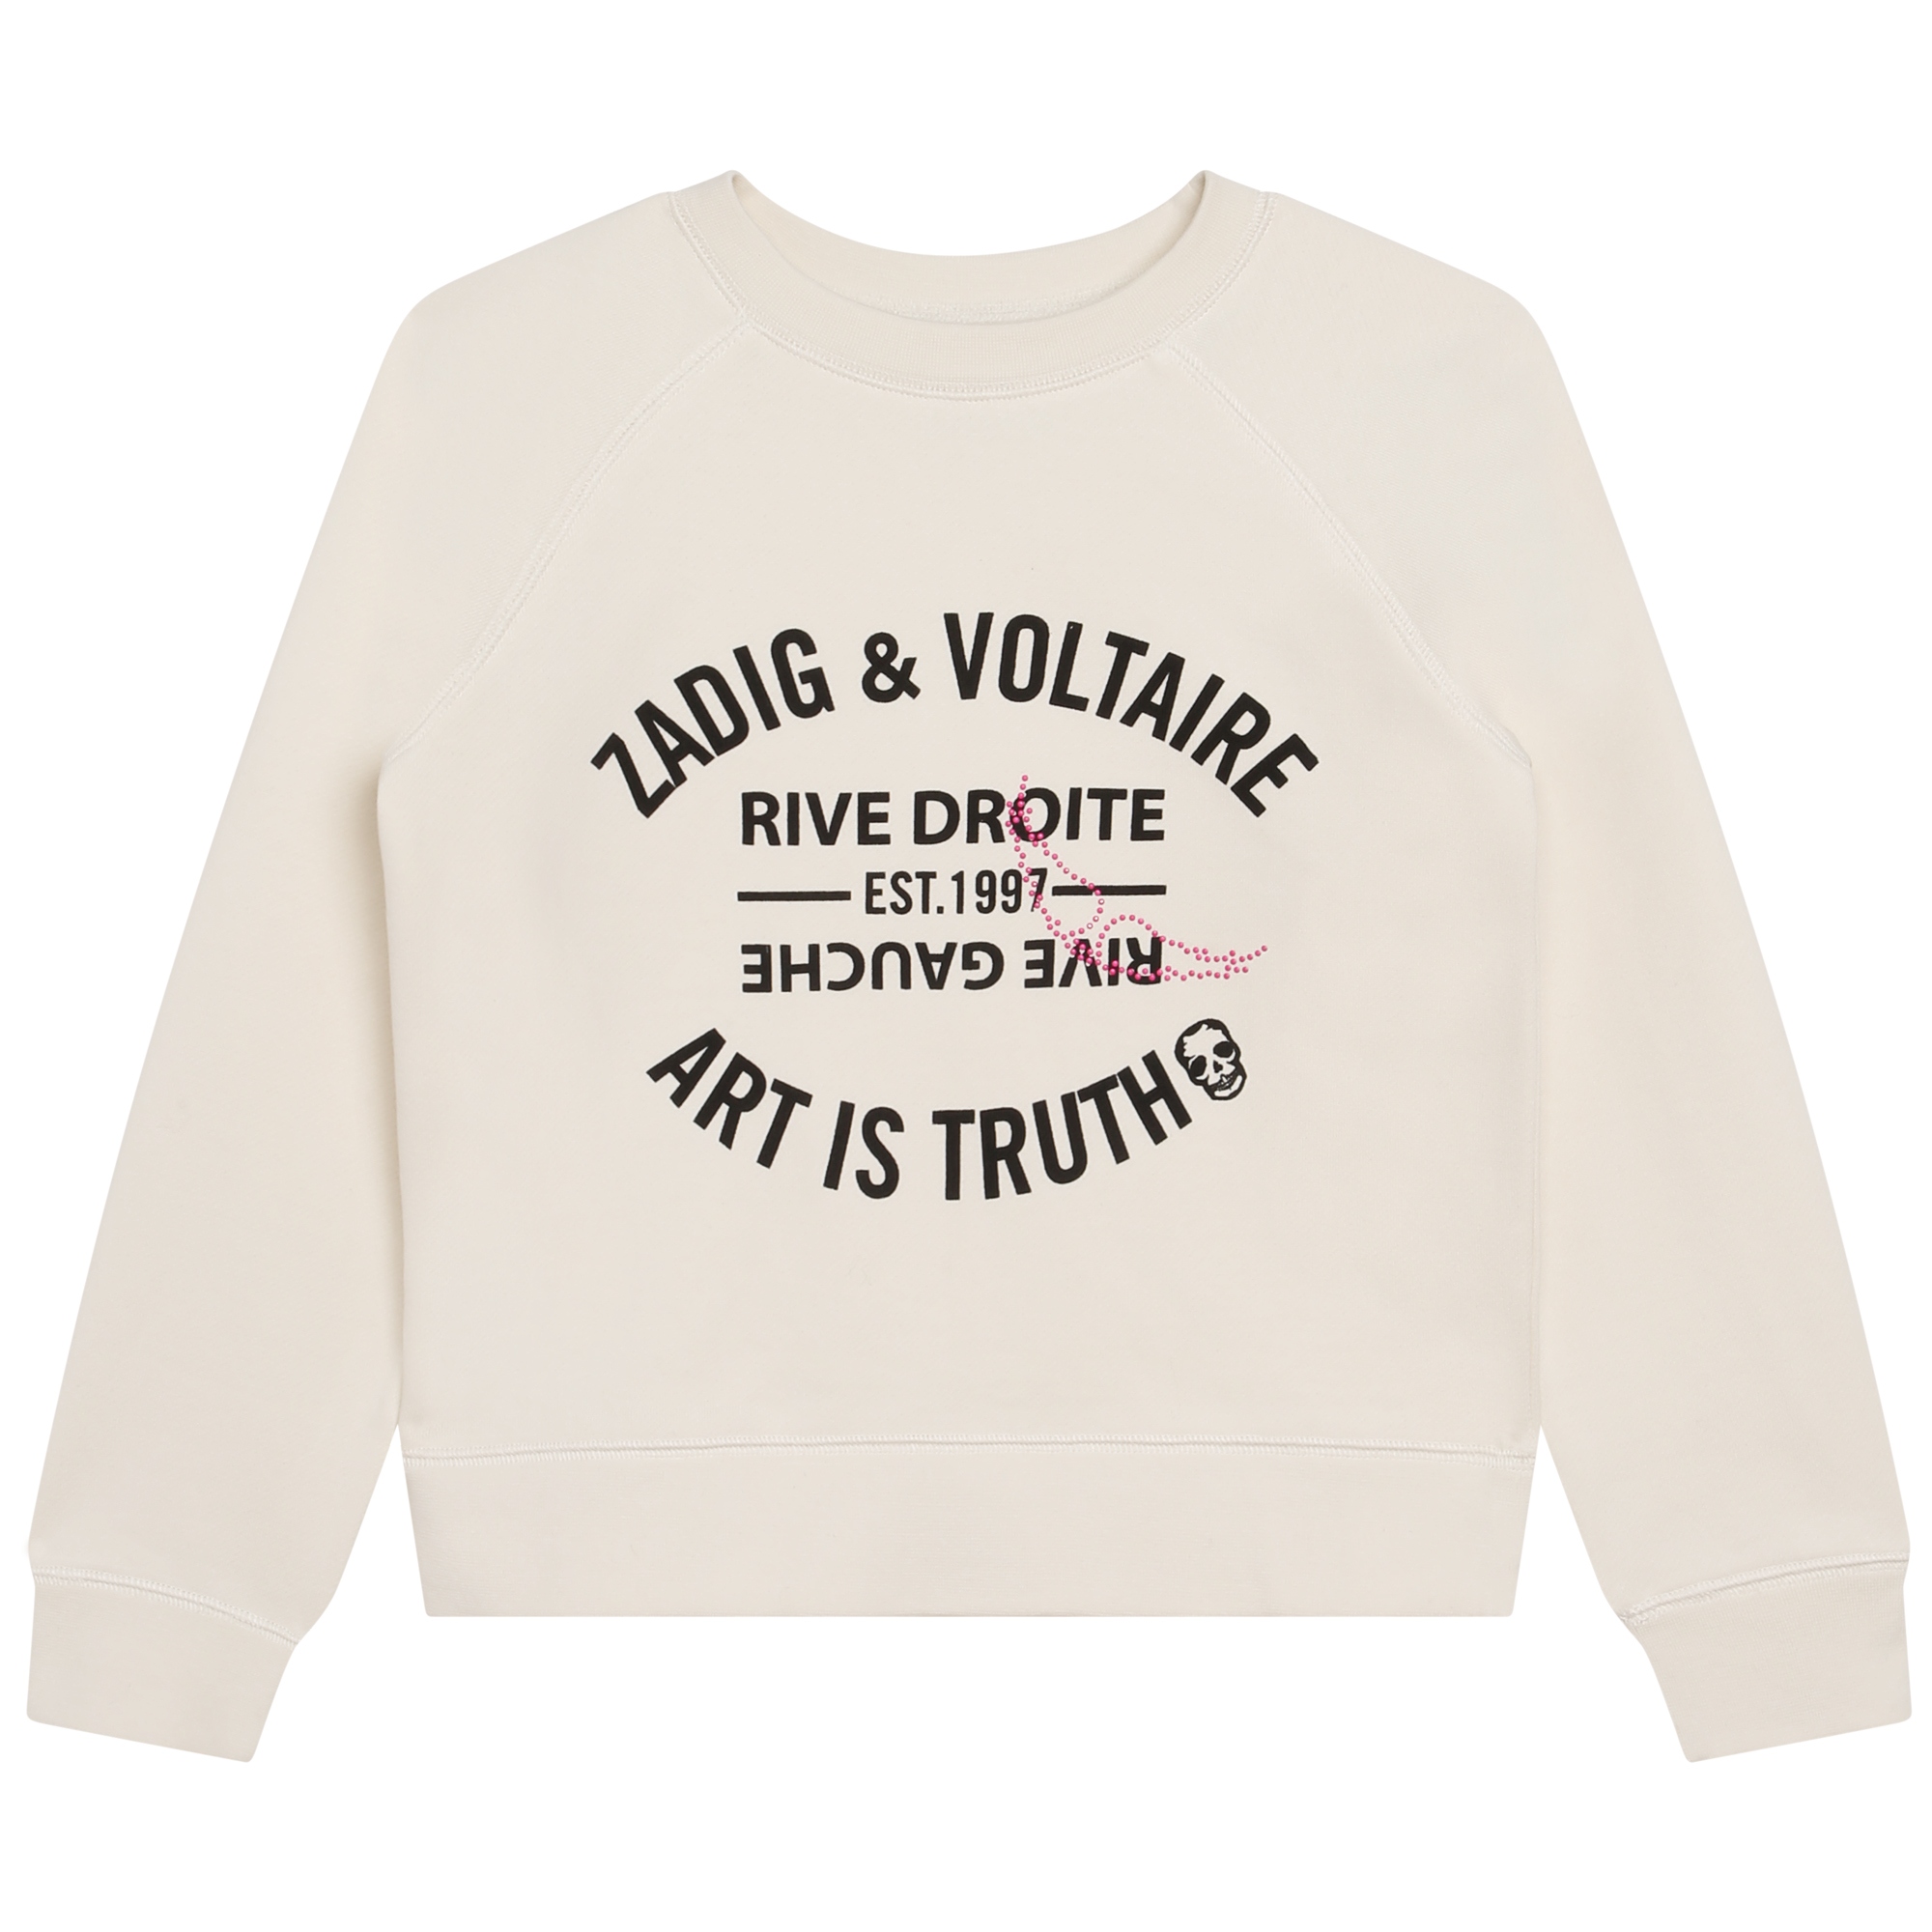 Cotton fleece sweatshirt ZADIG & VOLTAIRE for GIRL